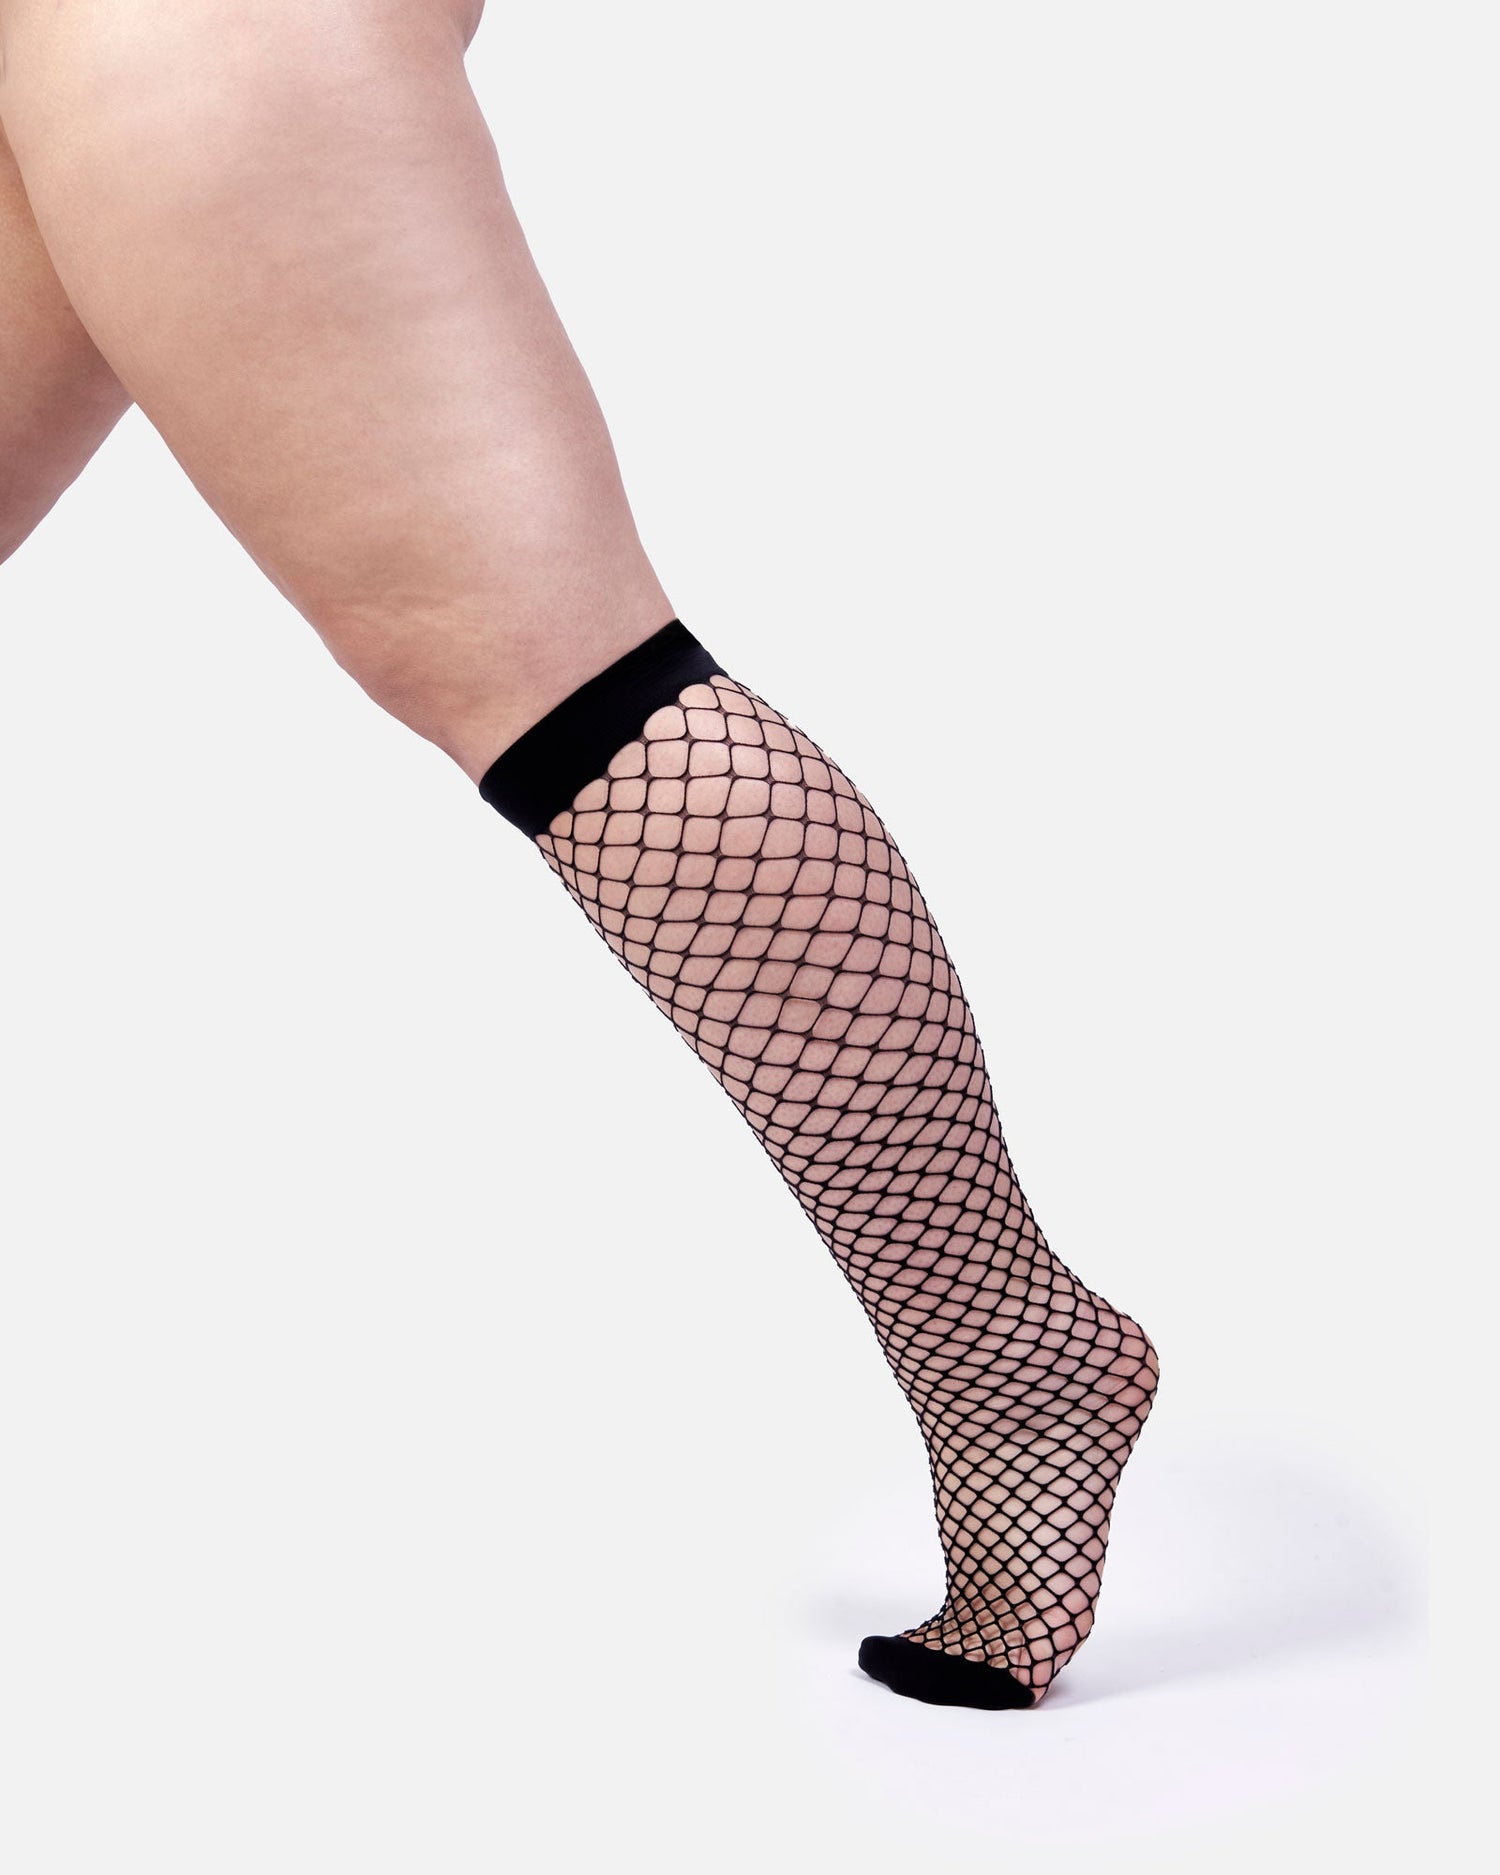 The Untamed Fishnet Knee High Socks